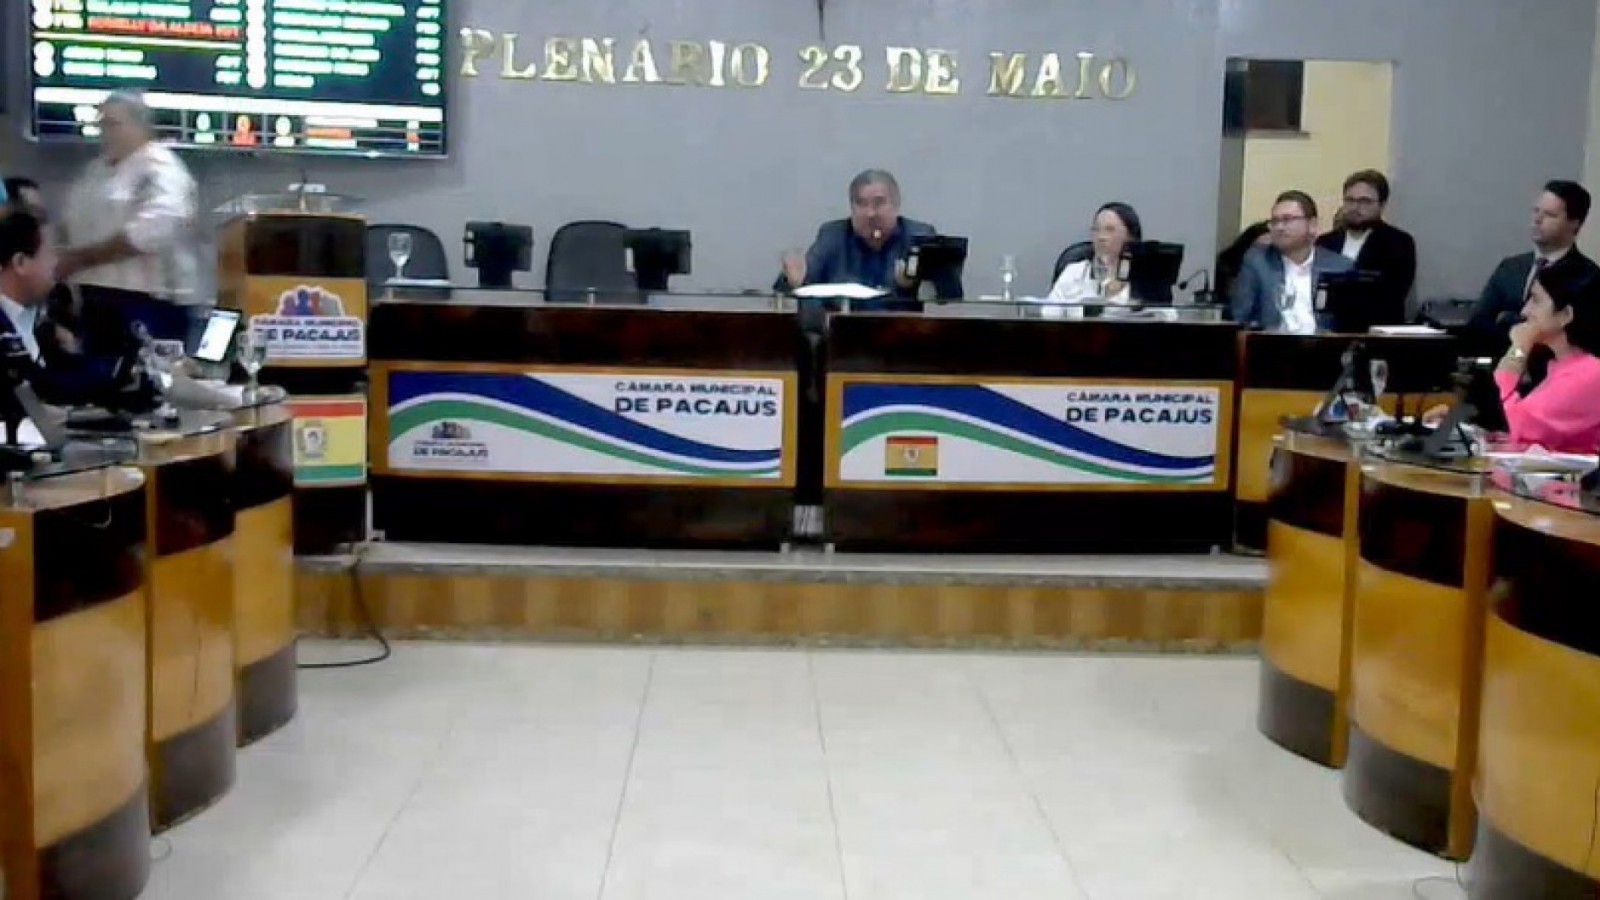 Câmara Municipal de Pacajus inicia processo de impeachment do prefeito Bruno Figueiredo e do vice Faguim da Zona Rural (Foto: REPRODUÇÃO)